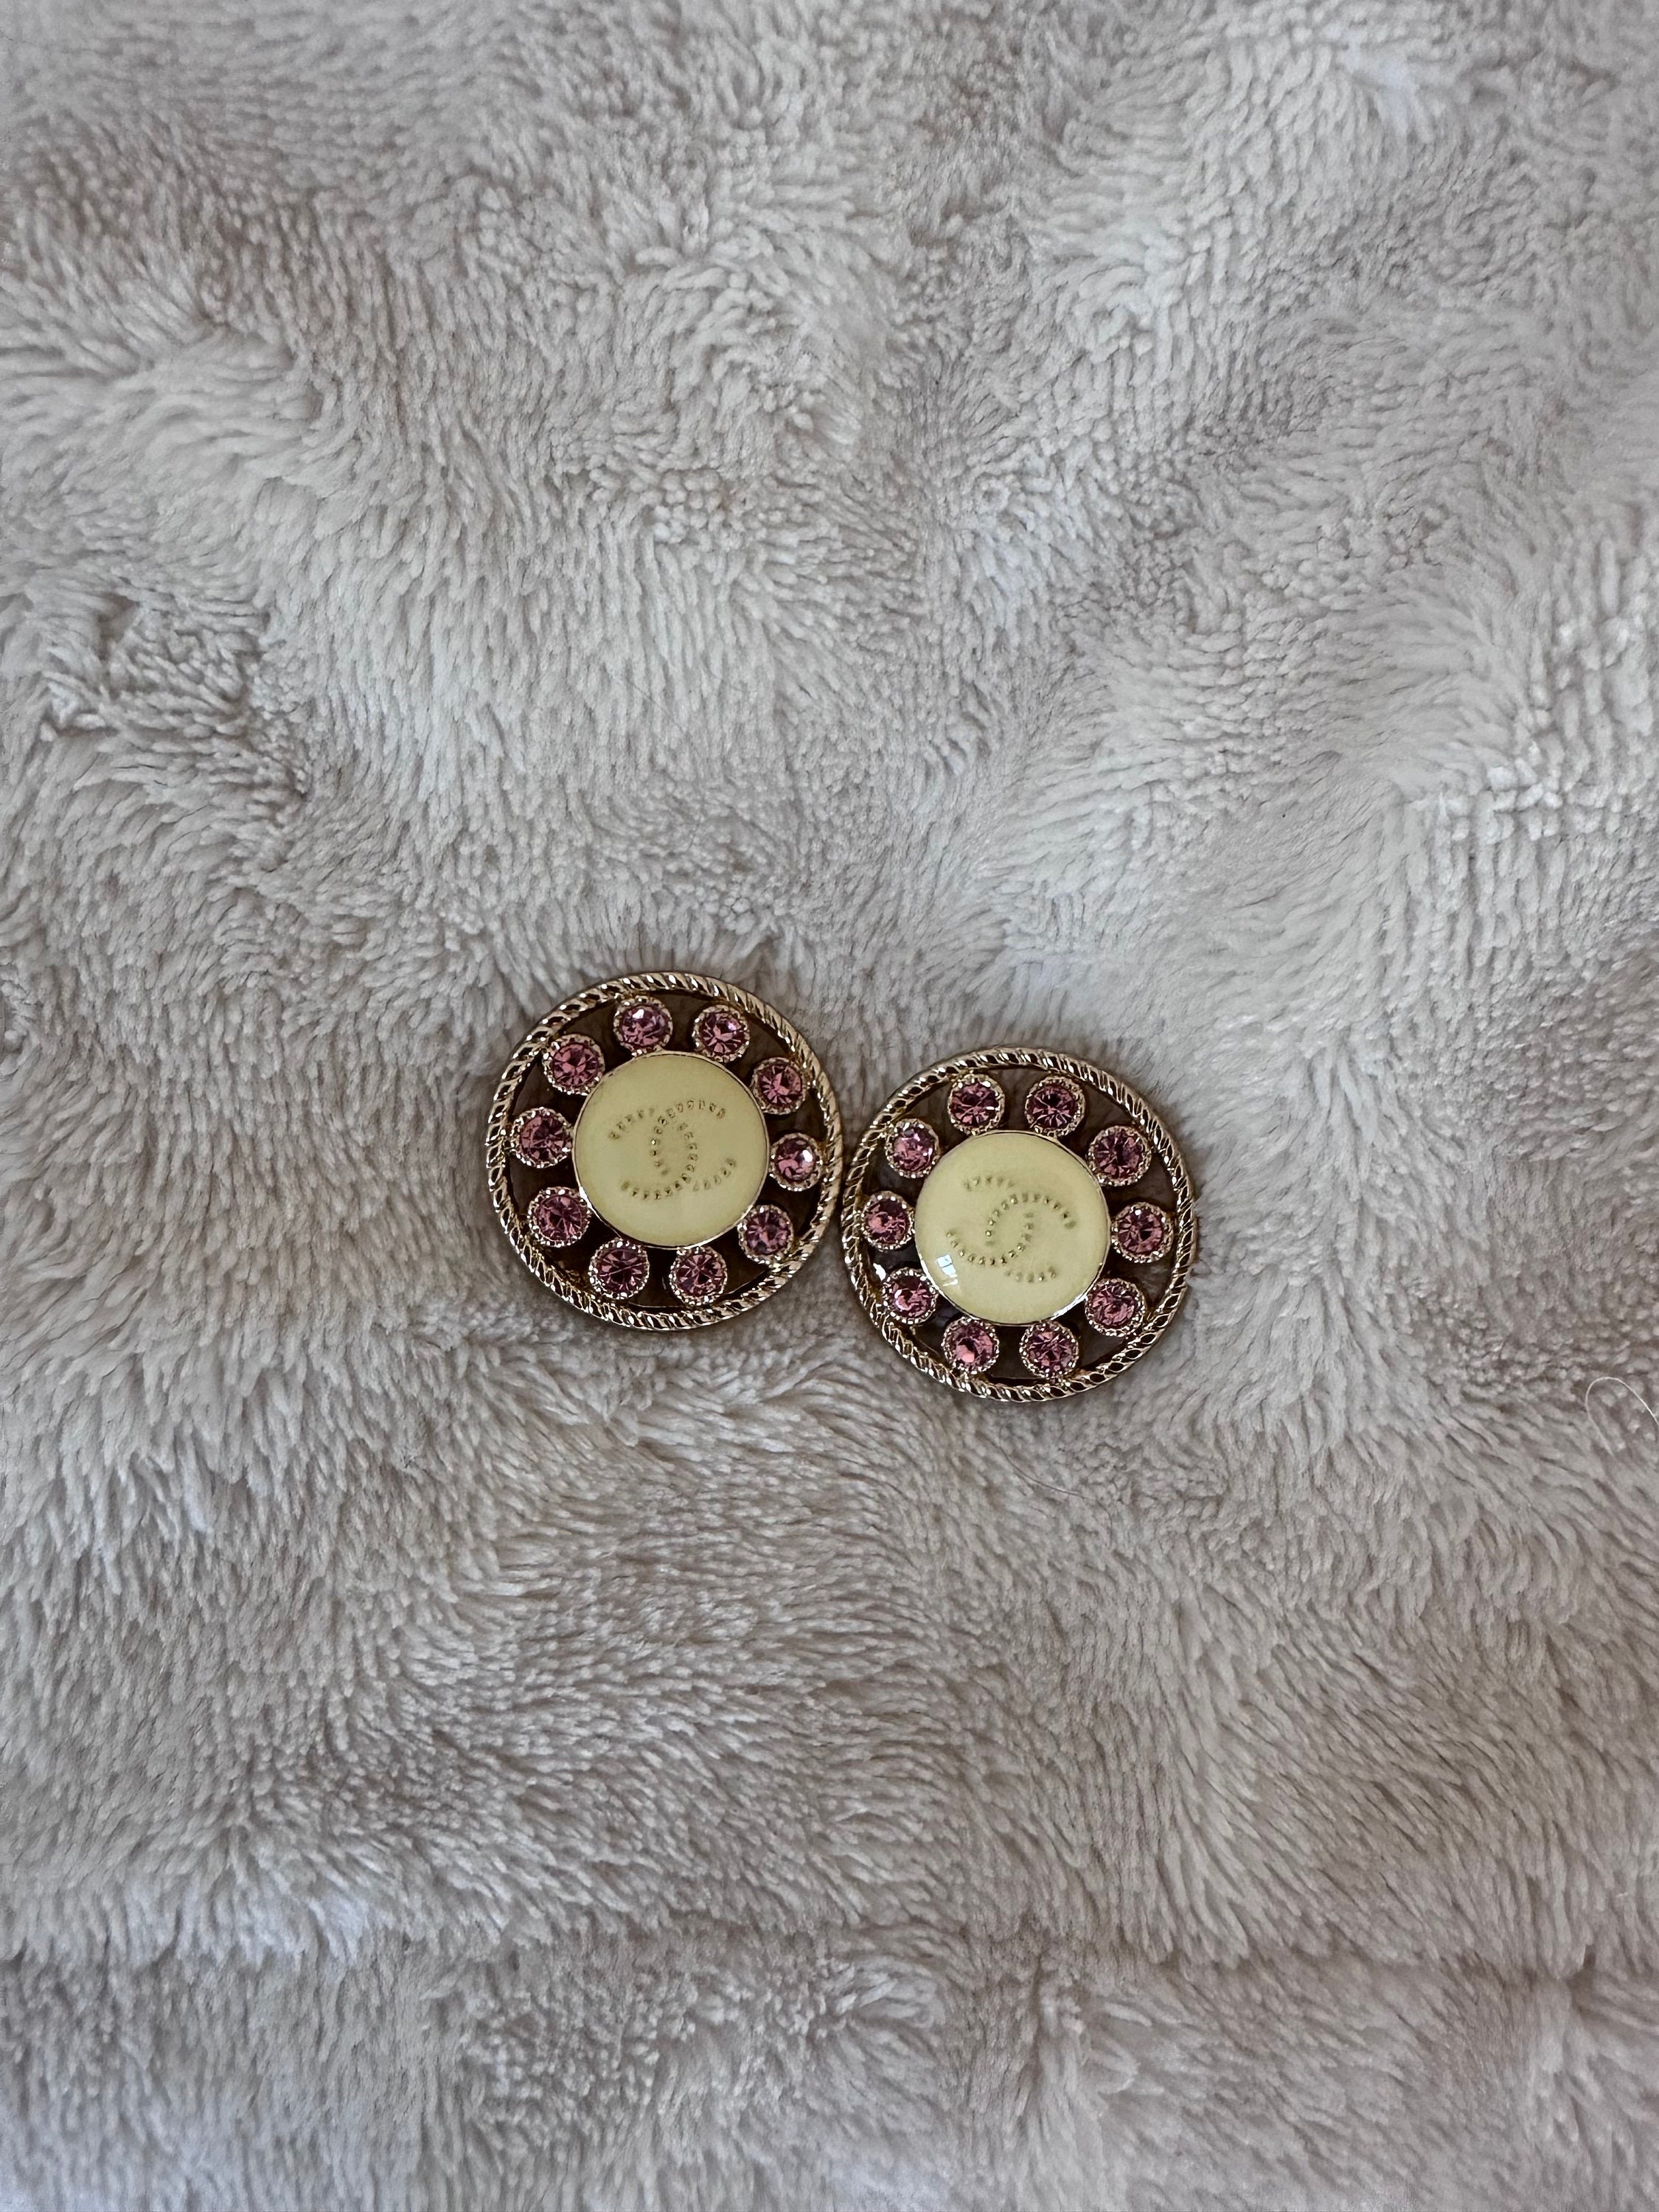 Chanel Button Earrings 